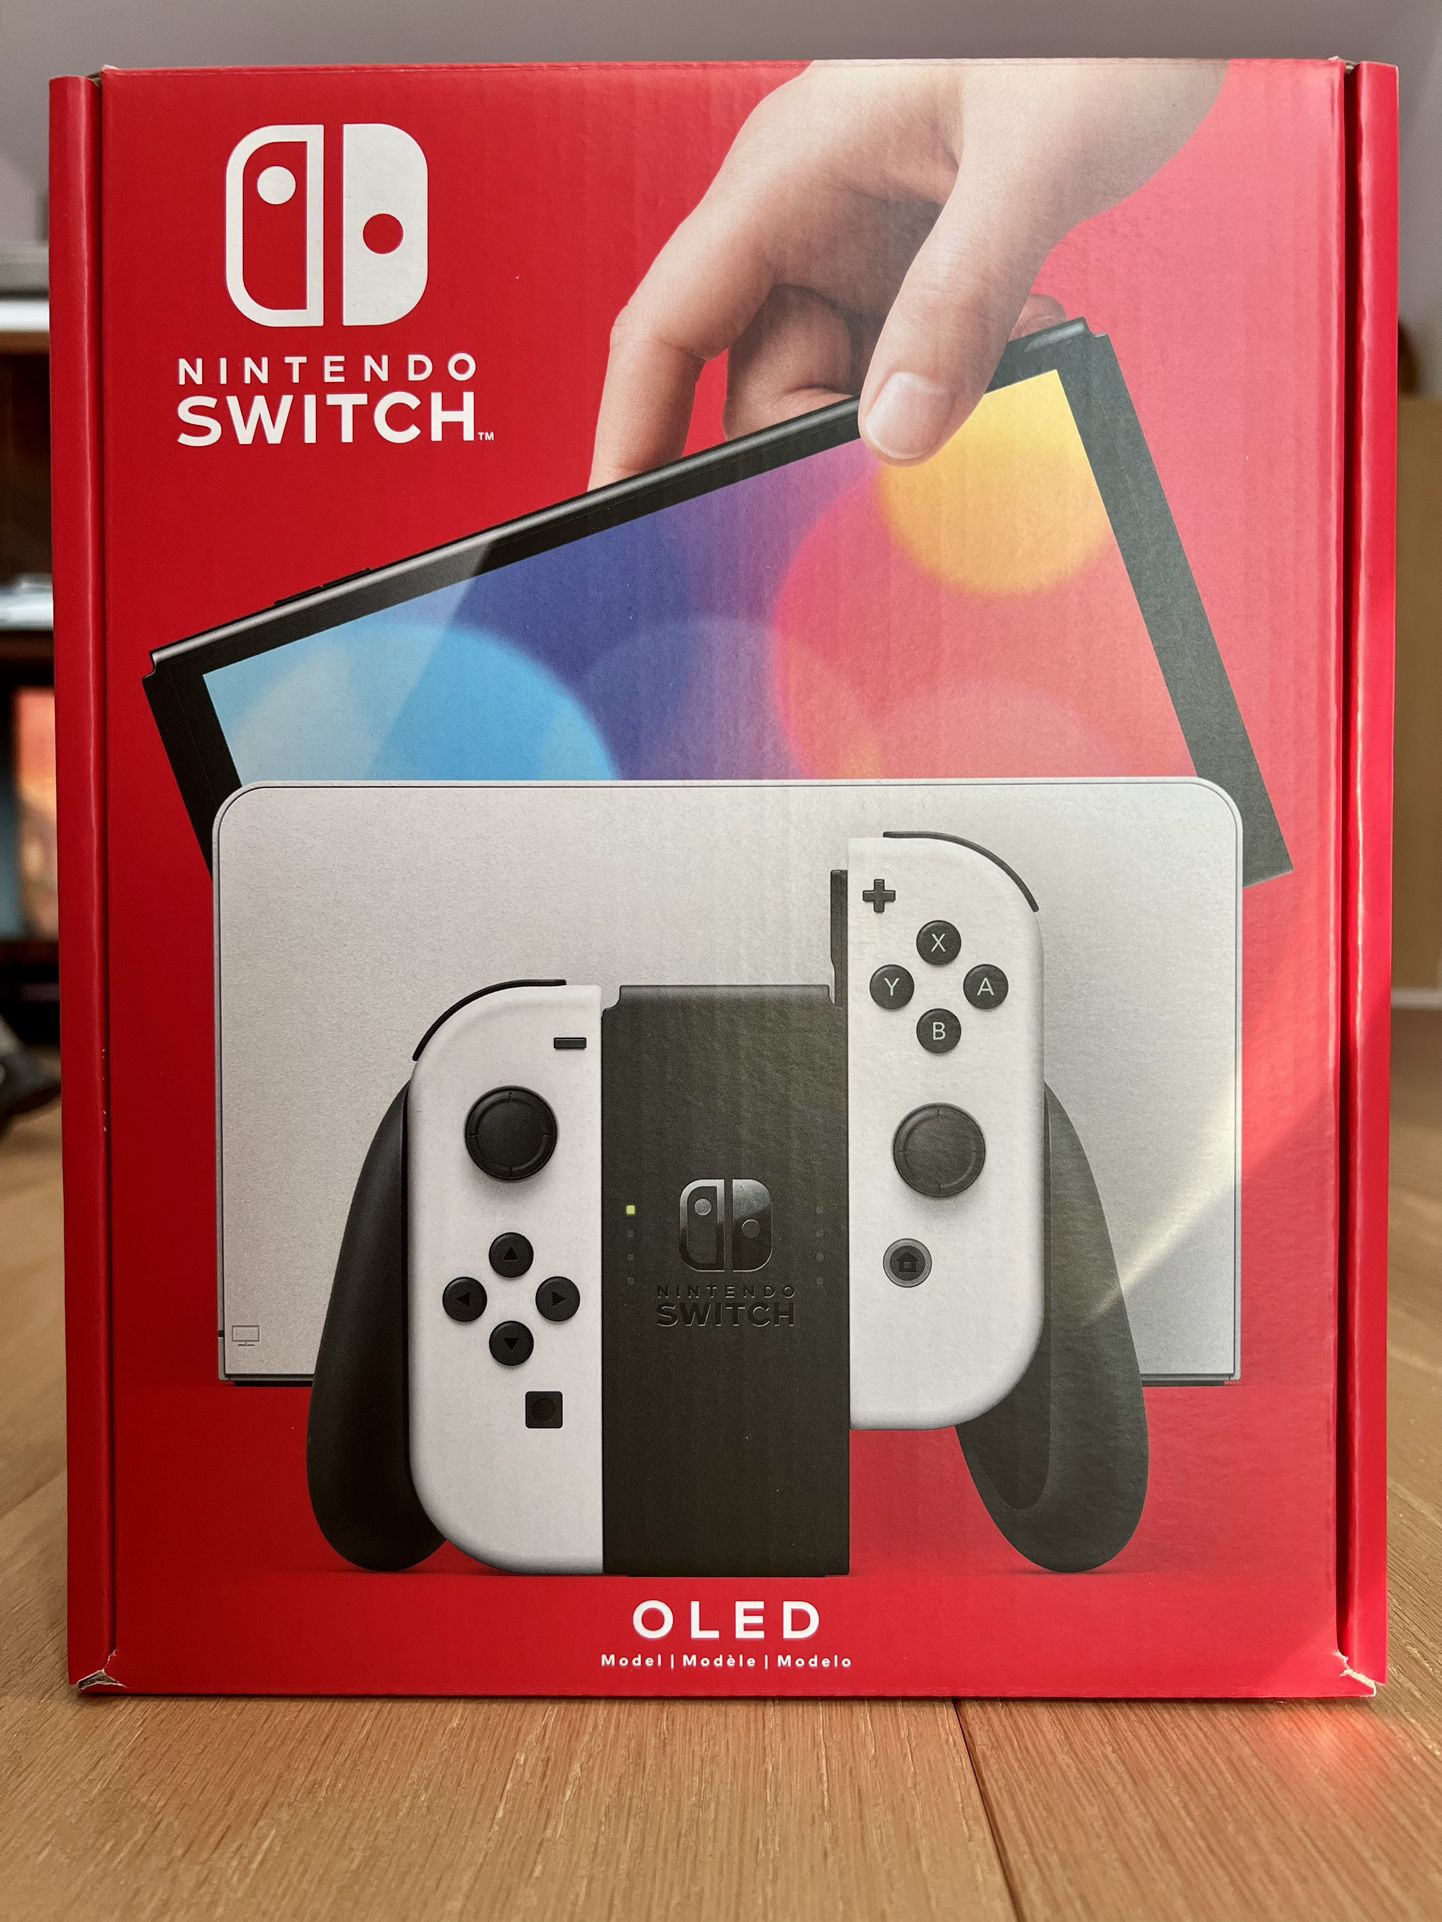 Nintendo Switch OLED - NEW